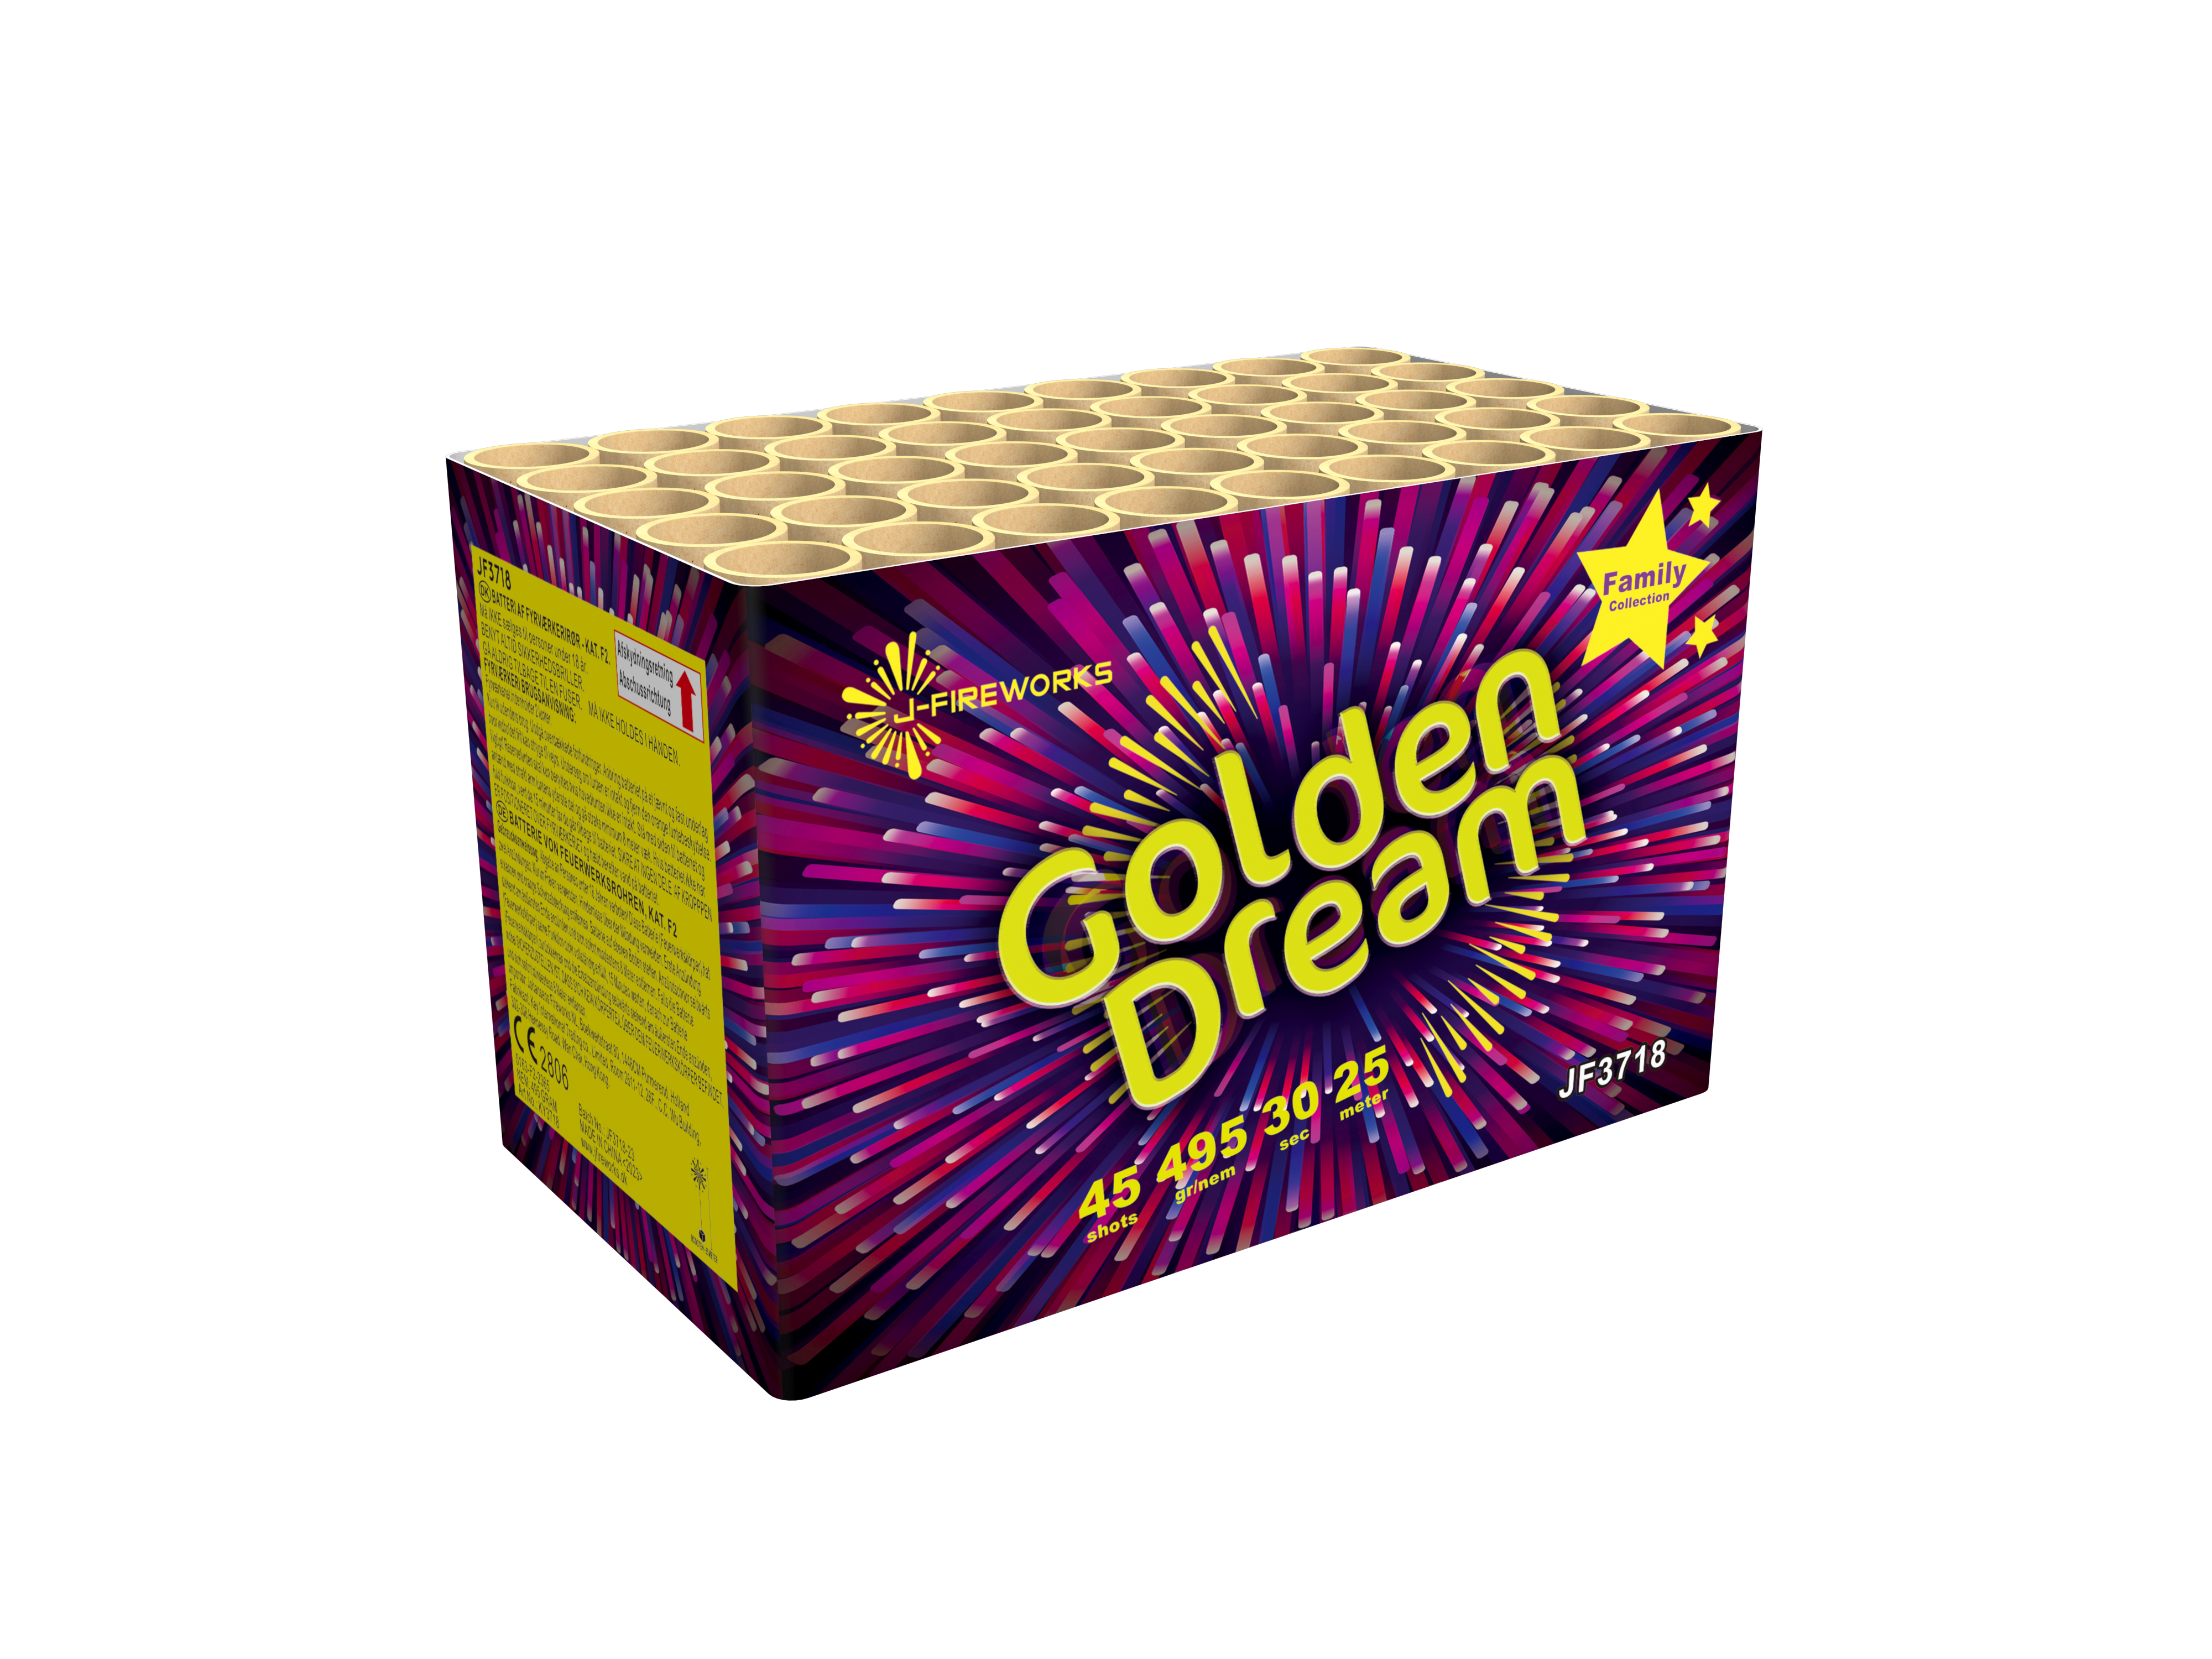 JF3718-a-J-Fireworks-Golden-Dream-45-Schuss-Feuerwerksbatterie_a1794a10-f547-4f5d-813d-4e64089203b5.png